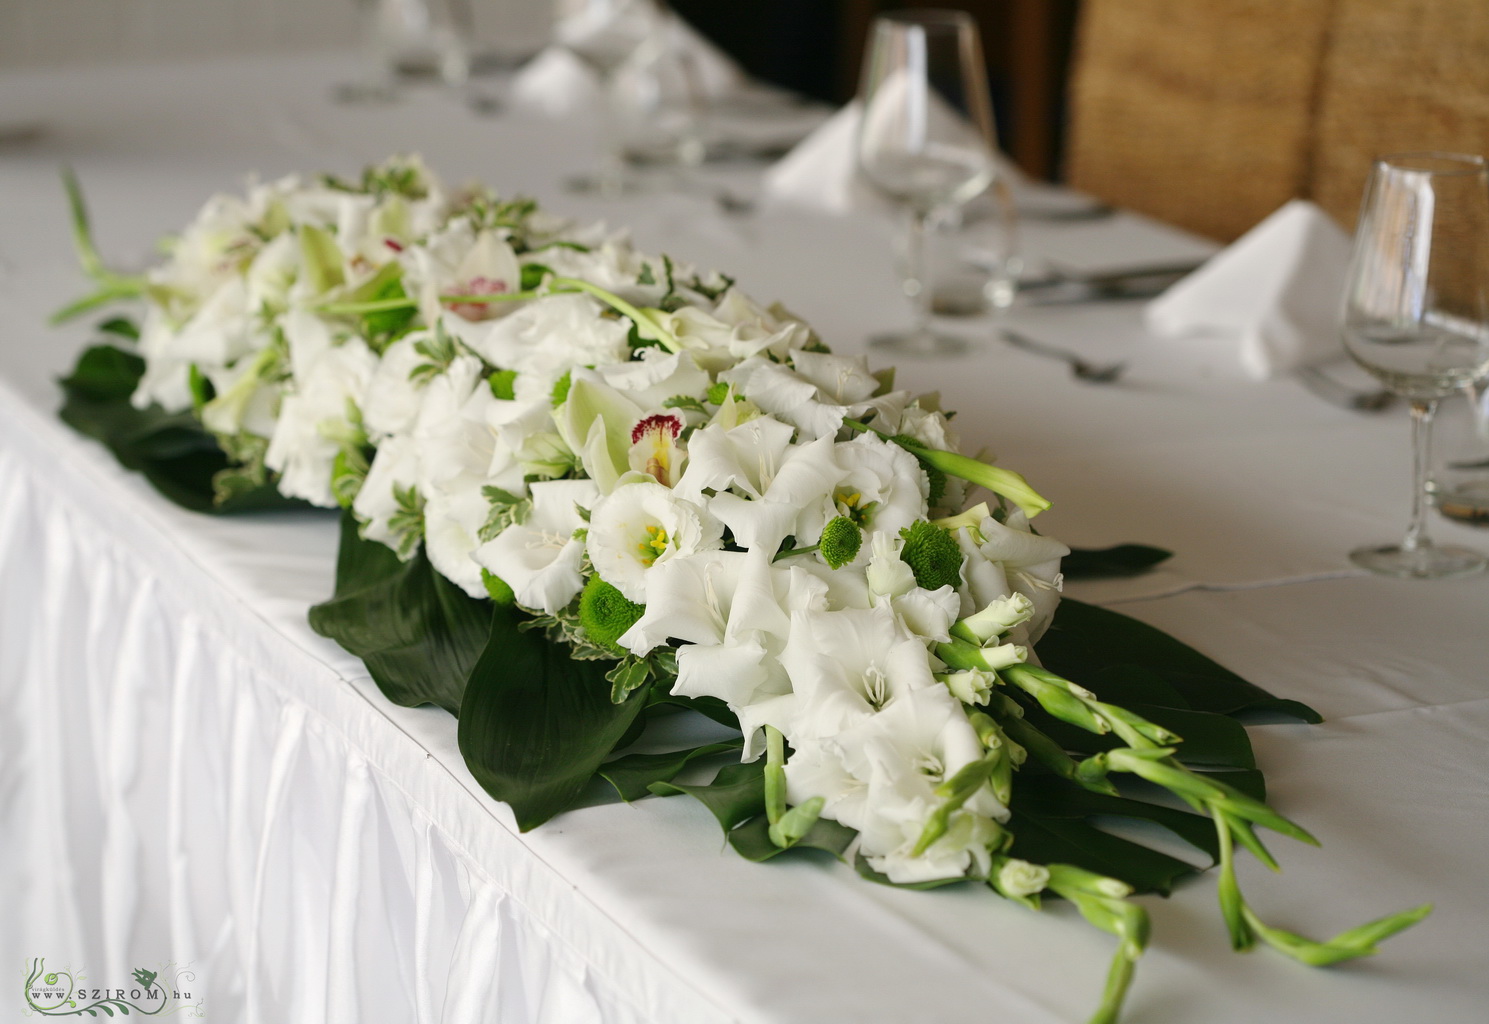 Virágküldés Budapest - Főasztaldísz Hemingway Étterem (orchidea, kardvirág, kála, gomb krizantém, fehér, zöld ), esküvő